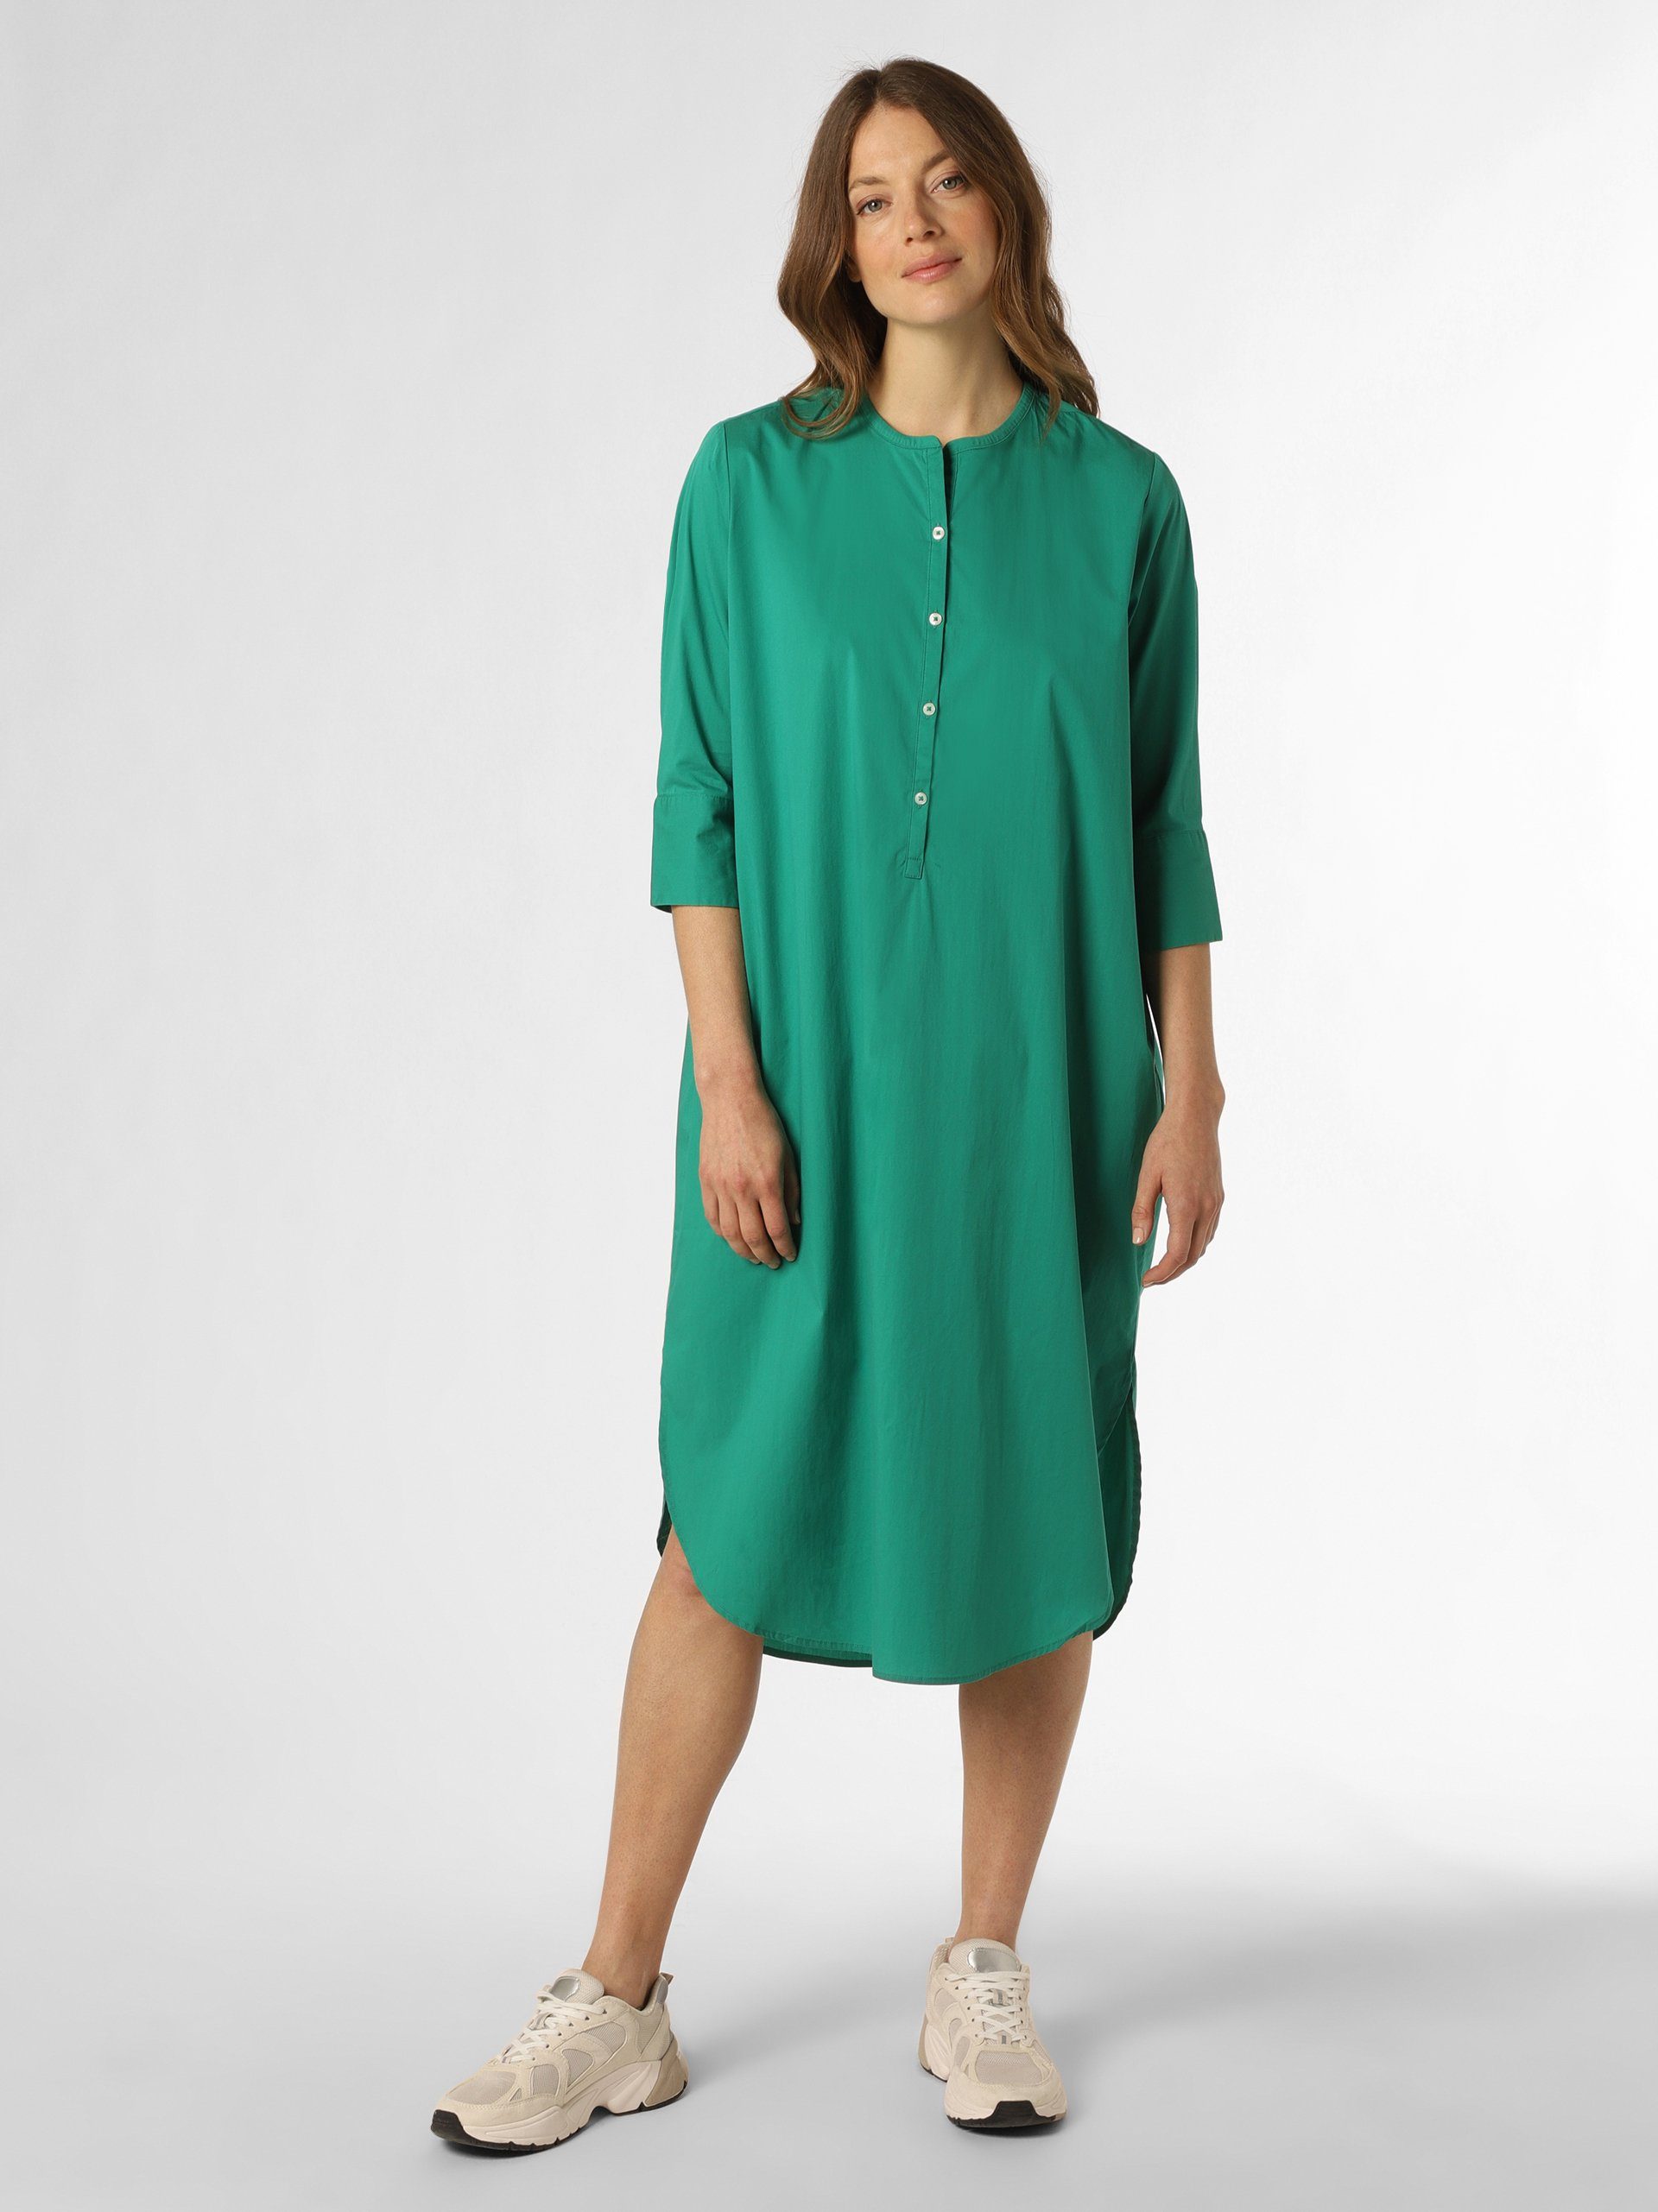 Apriori A-Linien-Kleid grün | Kleider